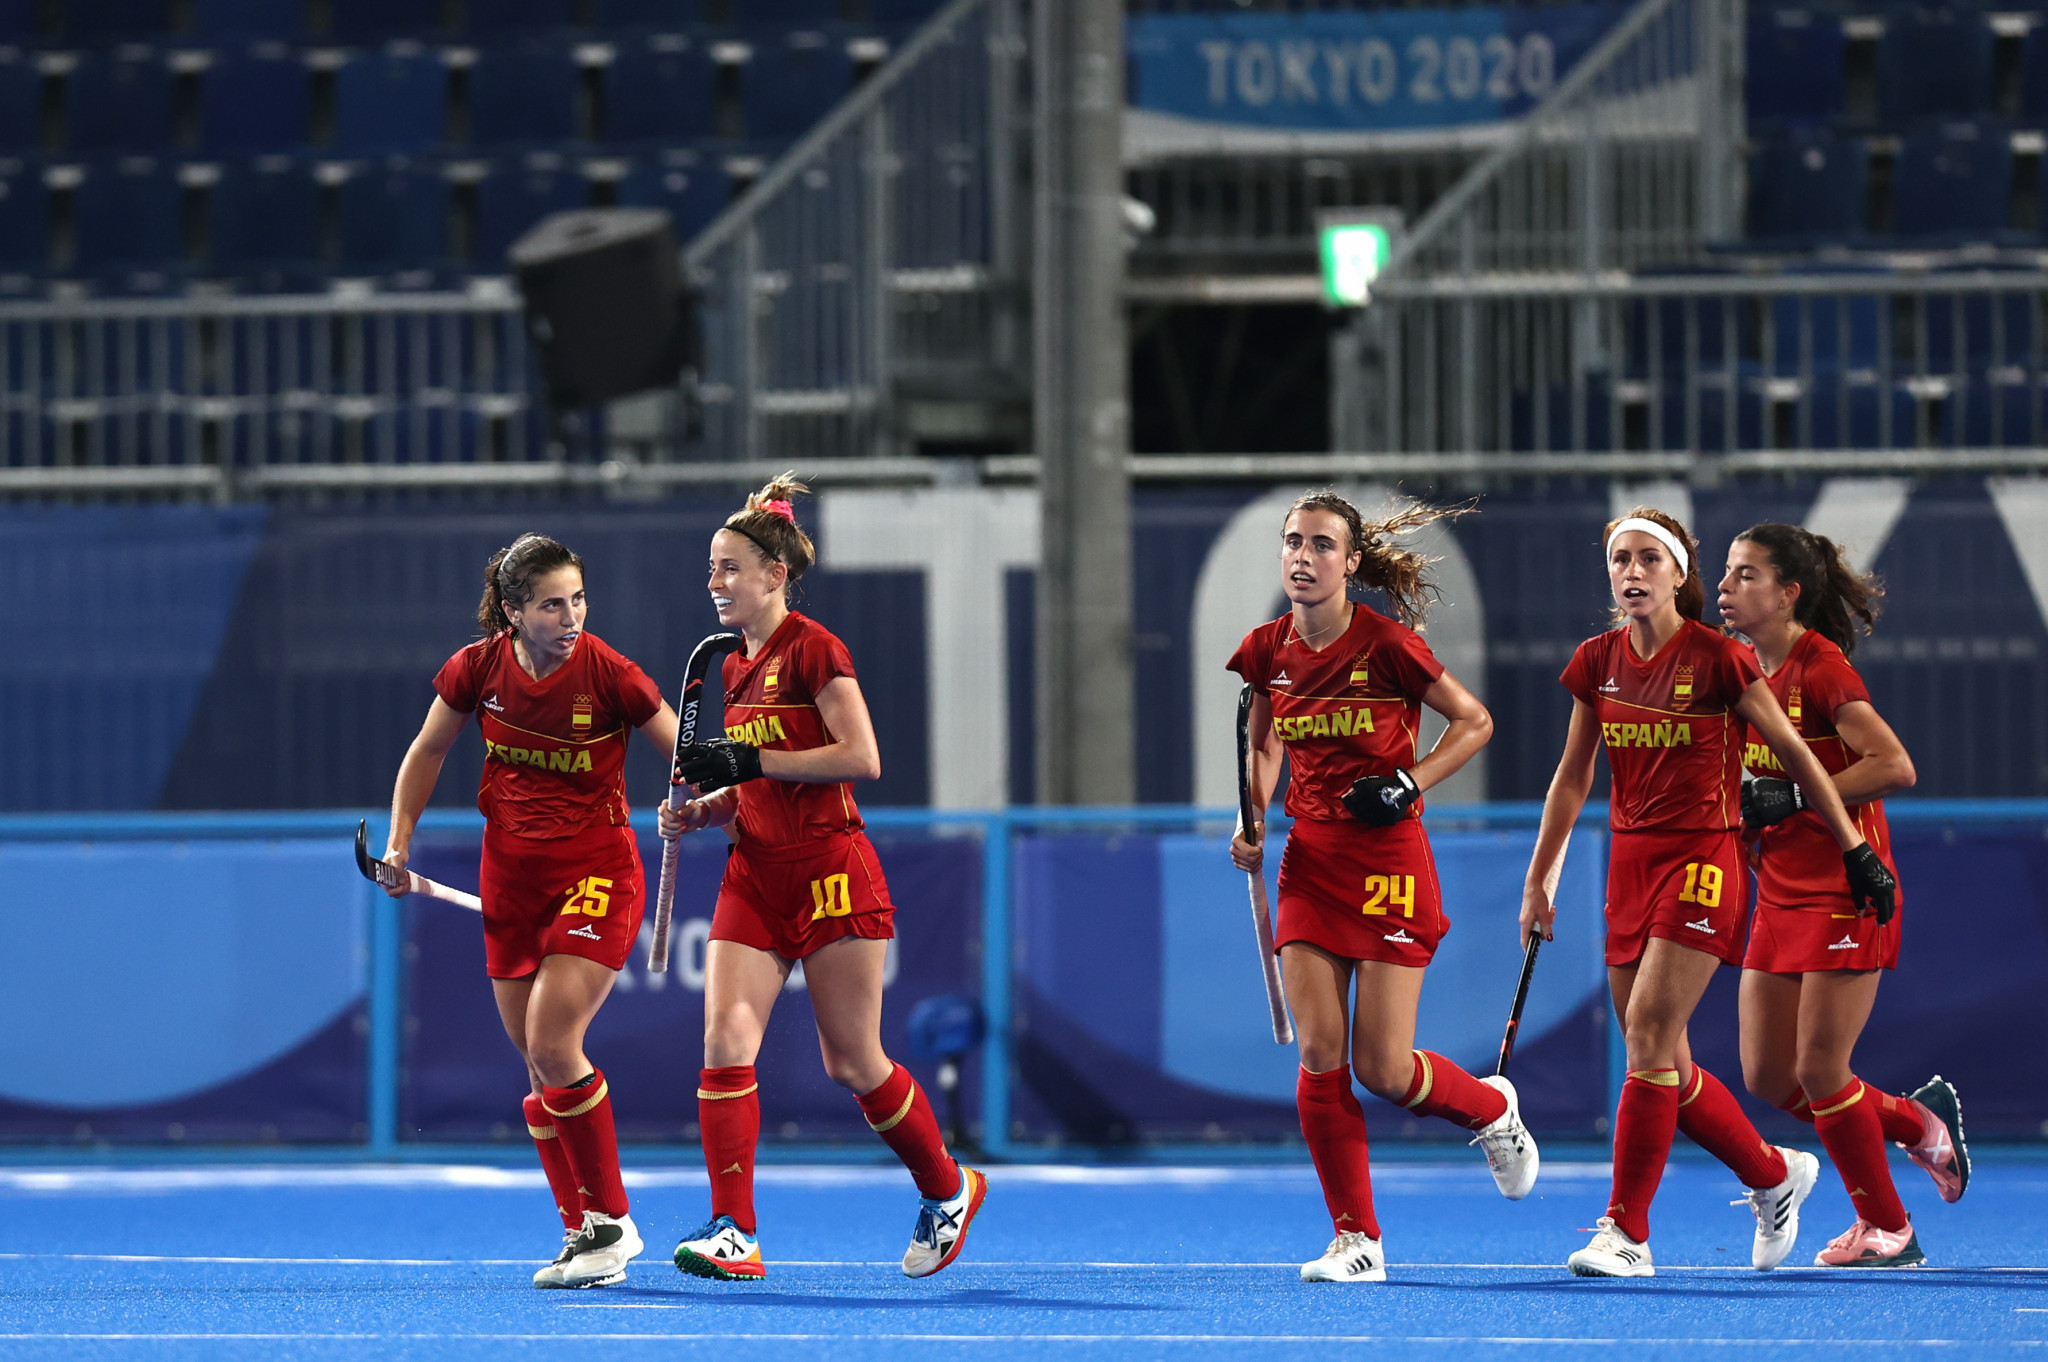 Co-hosts Spain win big in Women's FIH World Cup opener in Terrassa